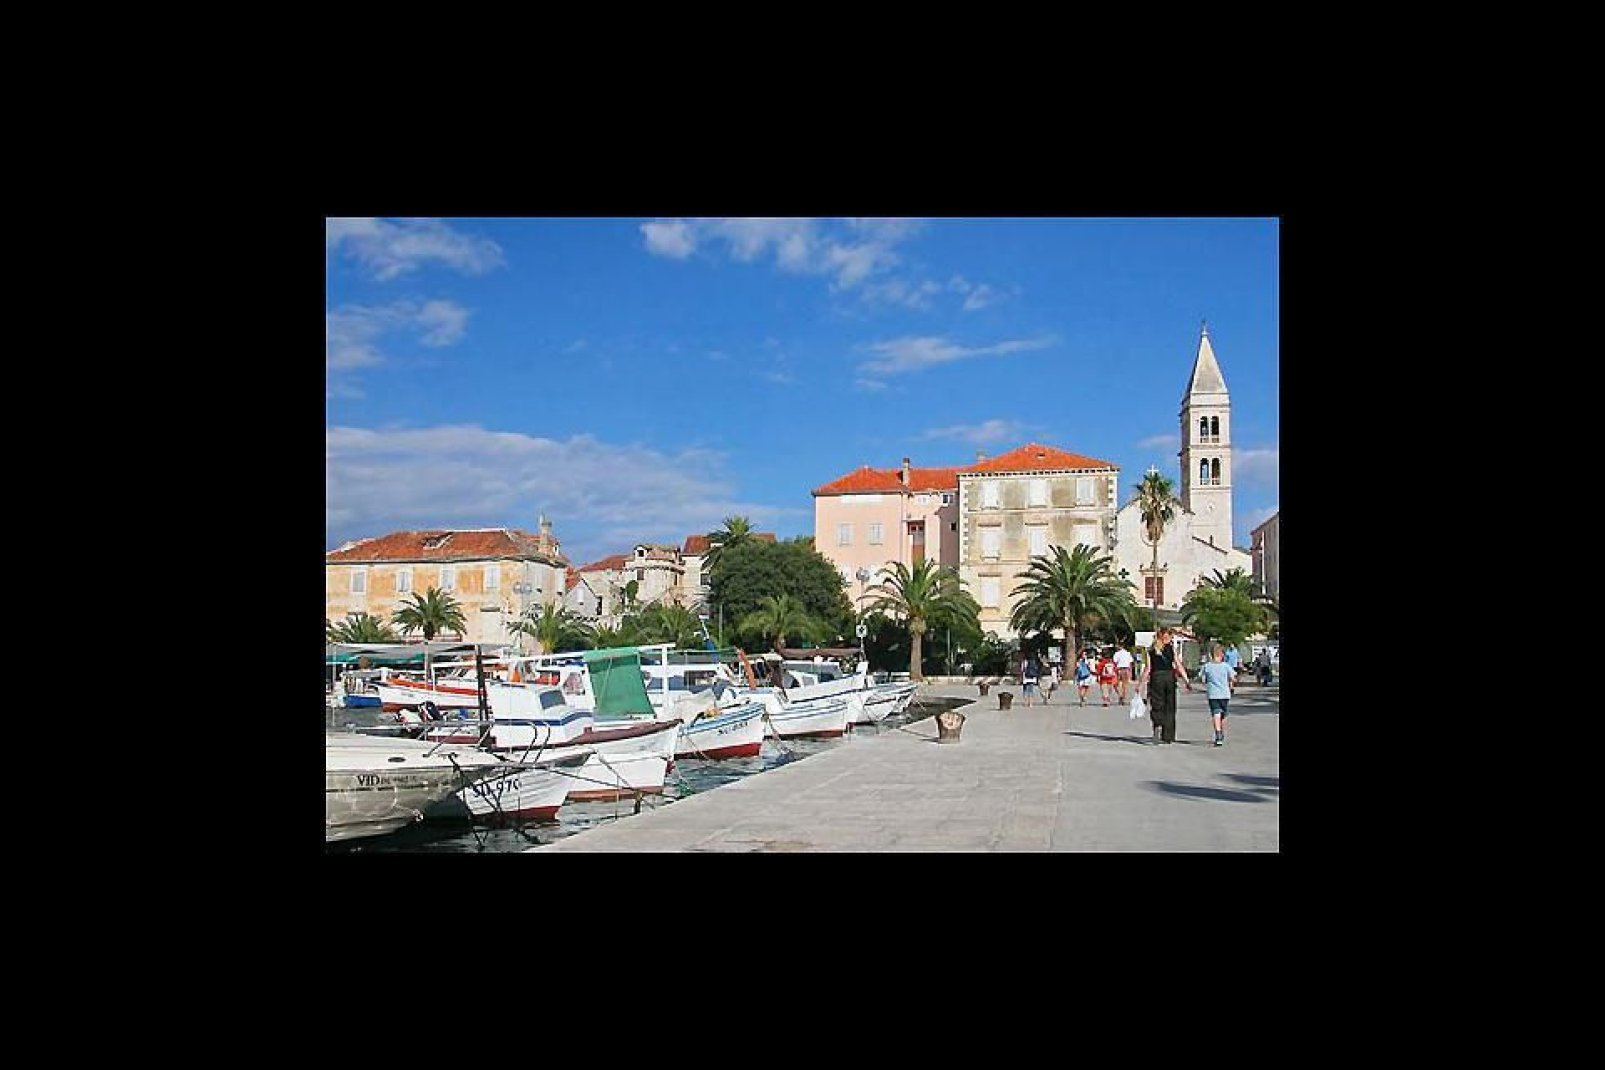 Visitatori che passeggiano nel porto turistico di Split, la città più grande della Croazia meridionale.